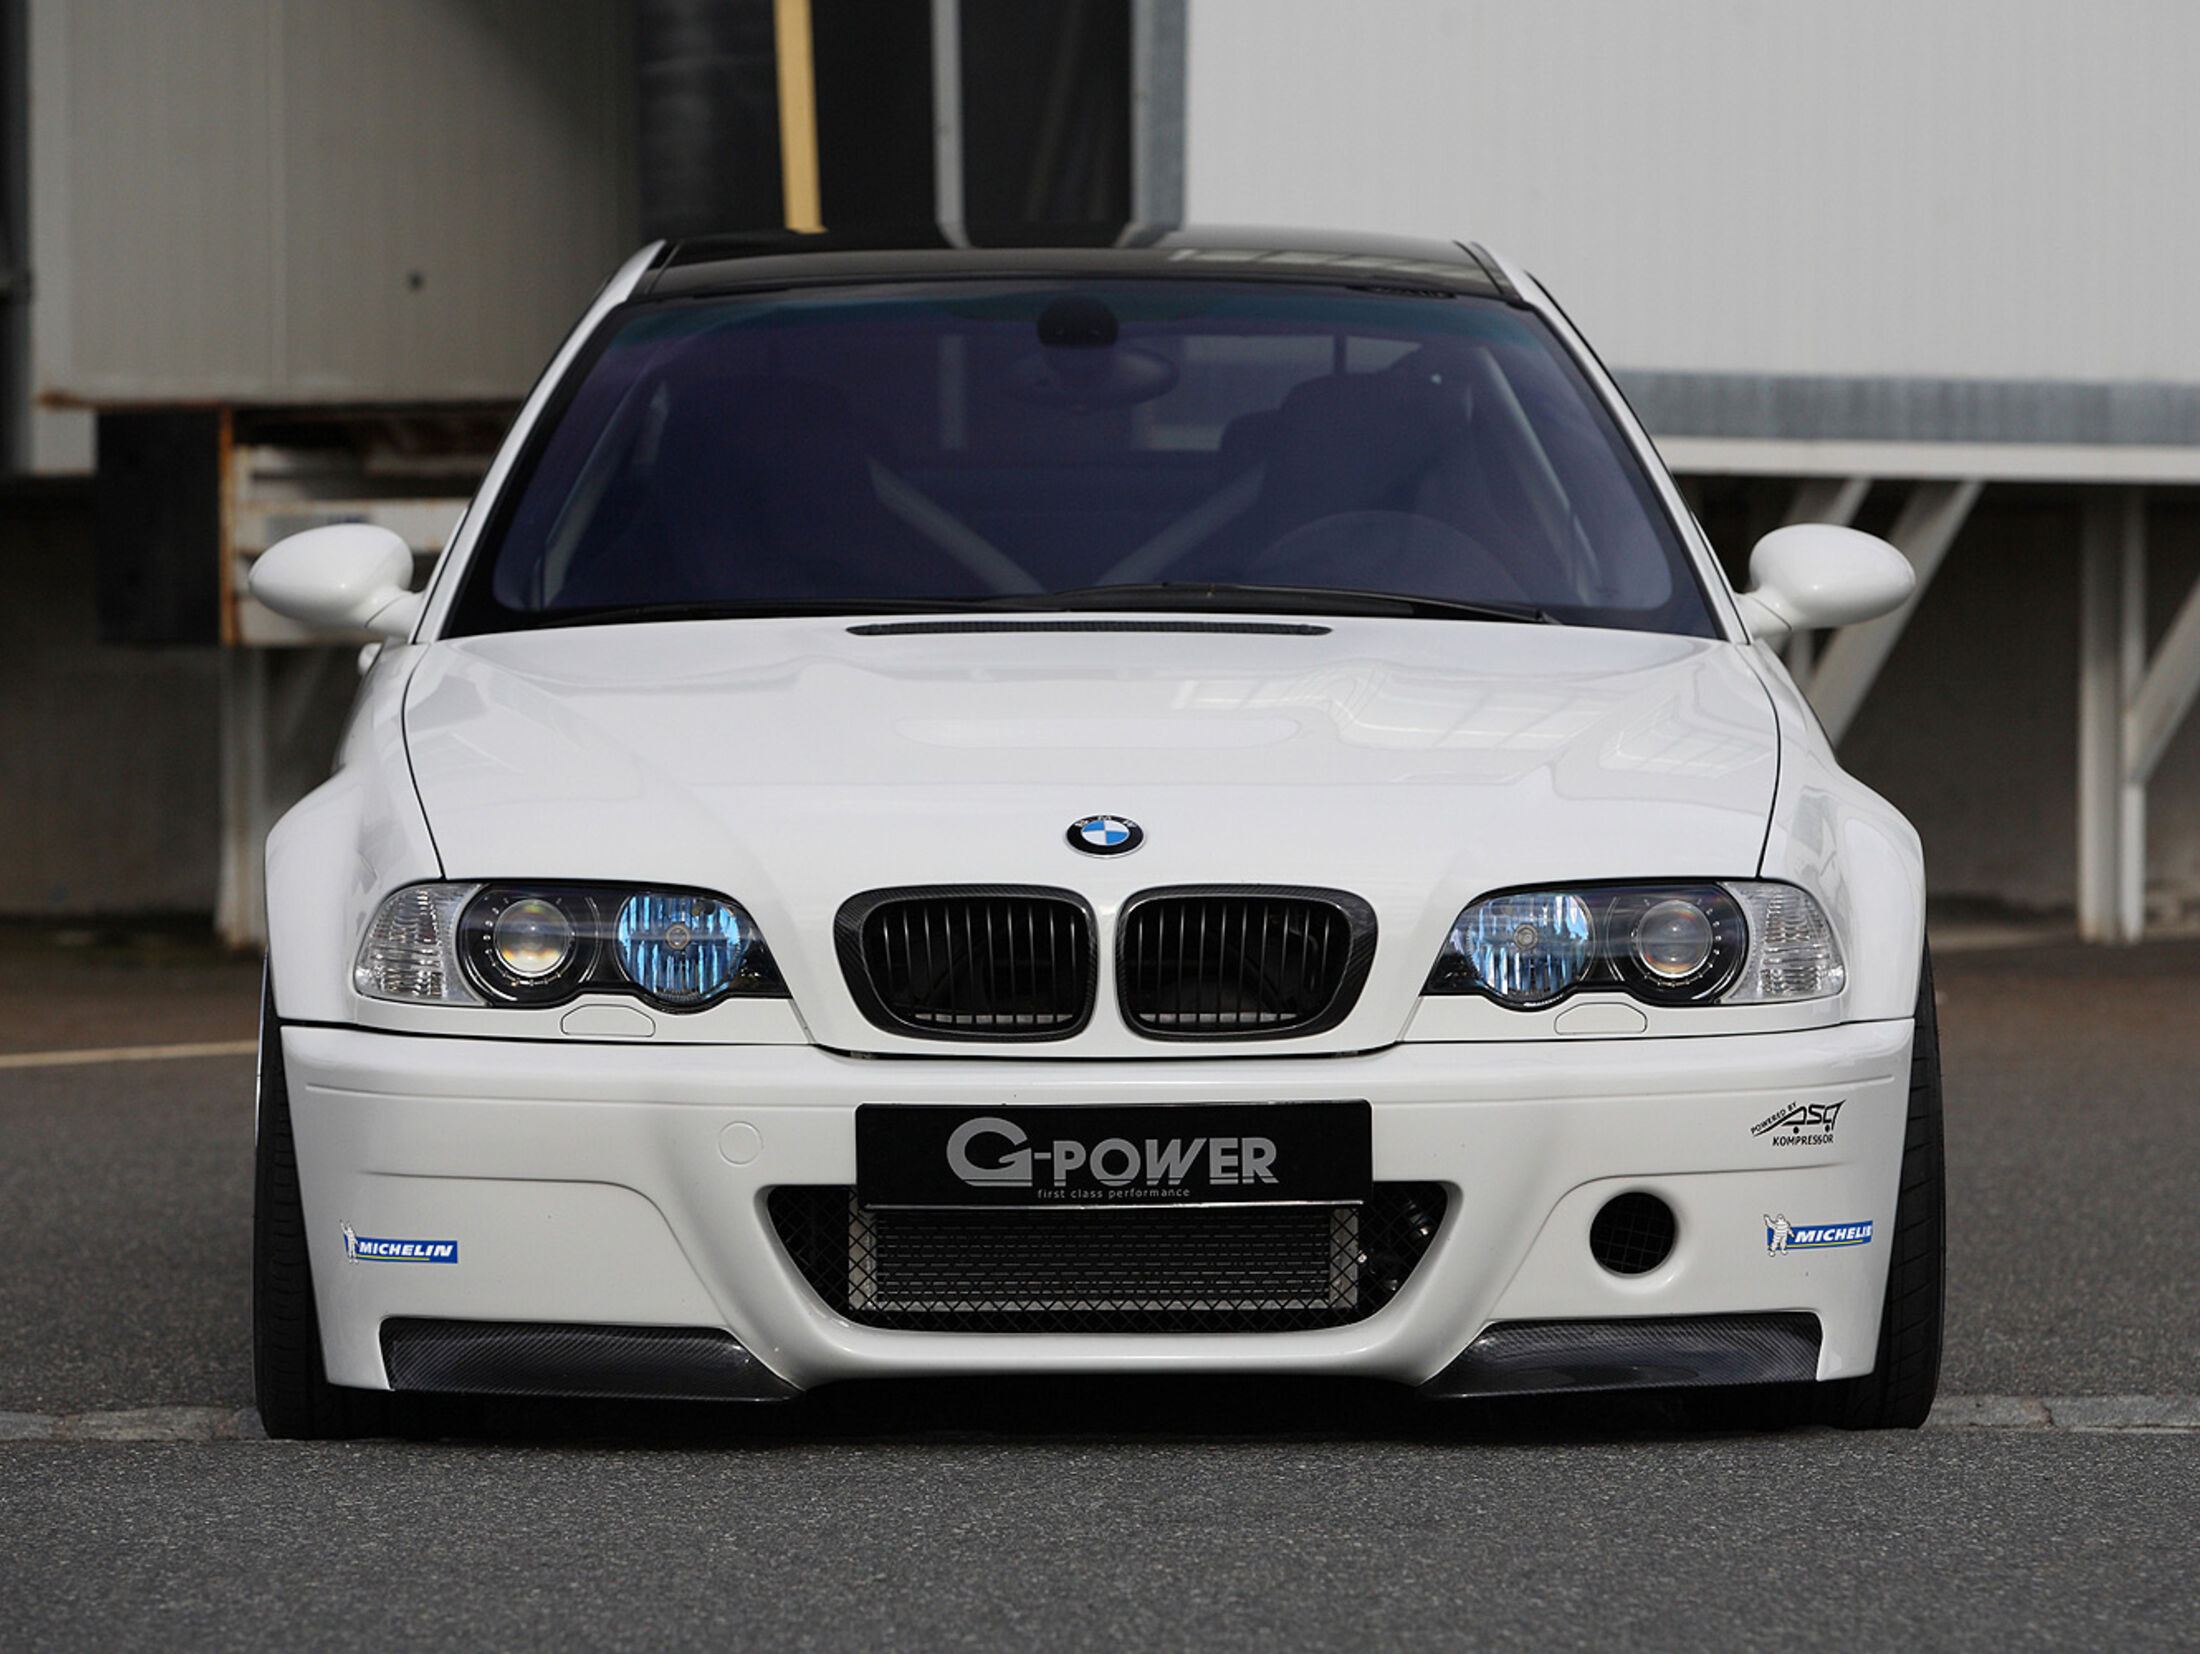 https://imgr1.auto-motor-und-sport.de/G-Power-BMW-M3-E46-jsonLd4x3-e40afecd-589282.jpg